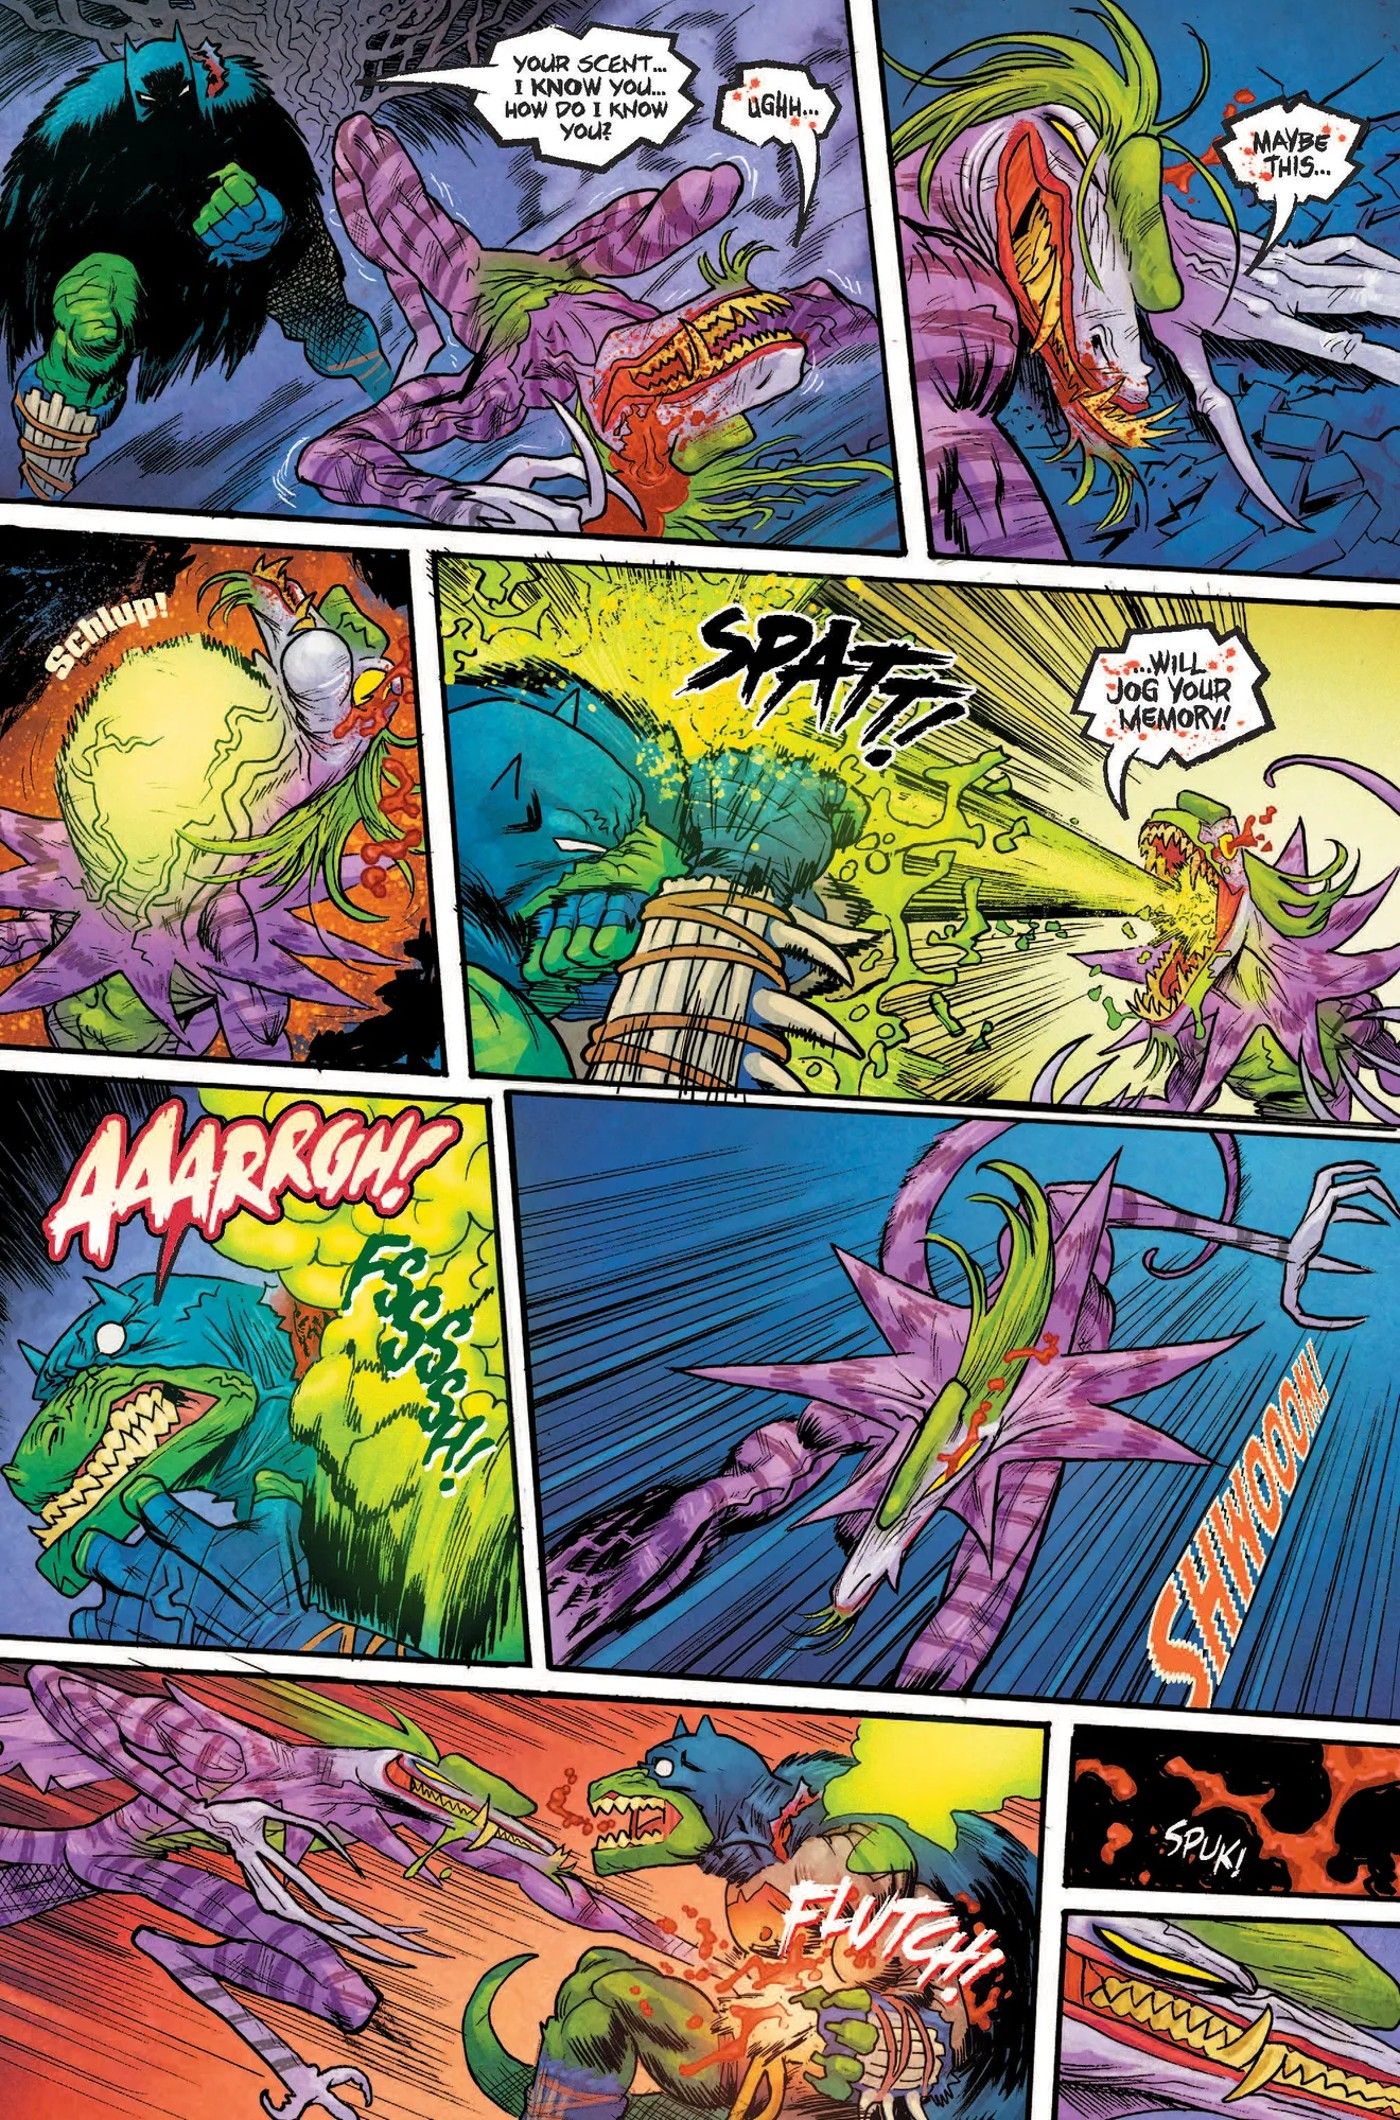 Dinosaur Batman vs Joker Gives T-Rex Dark Knight a Savage Origin